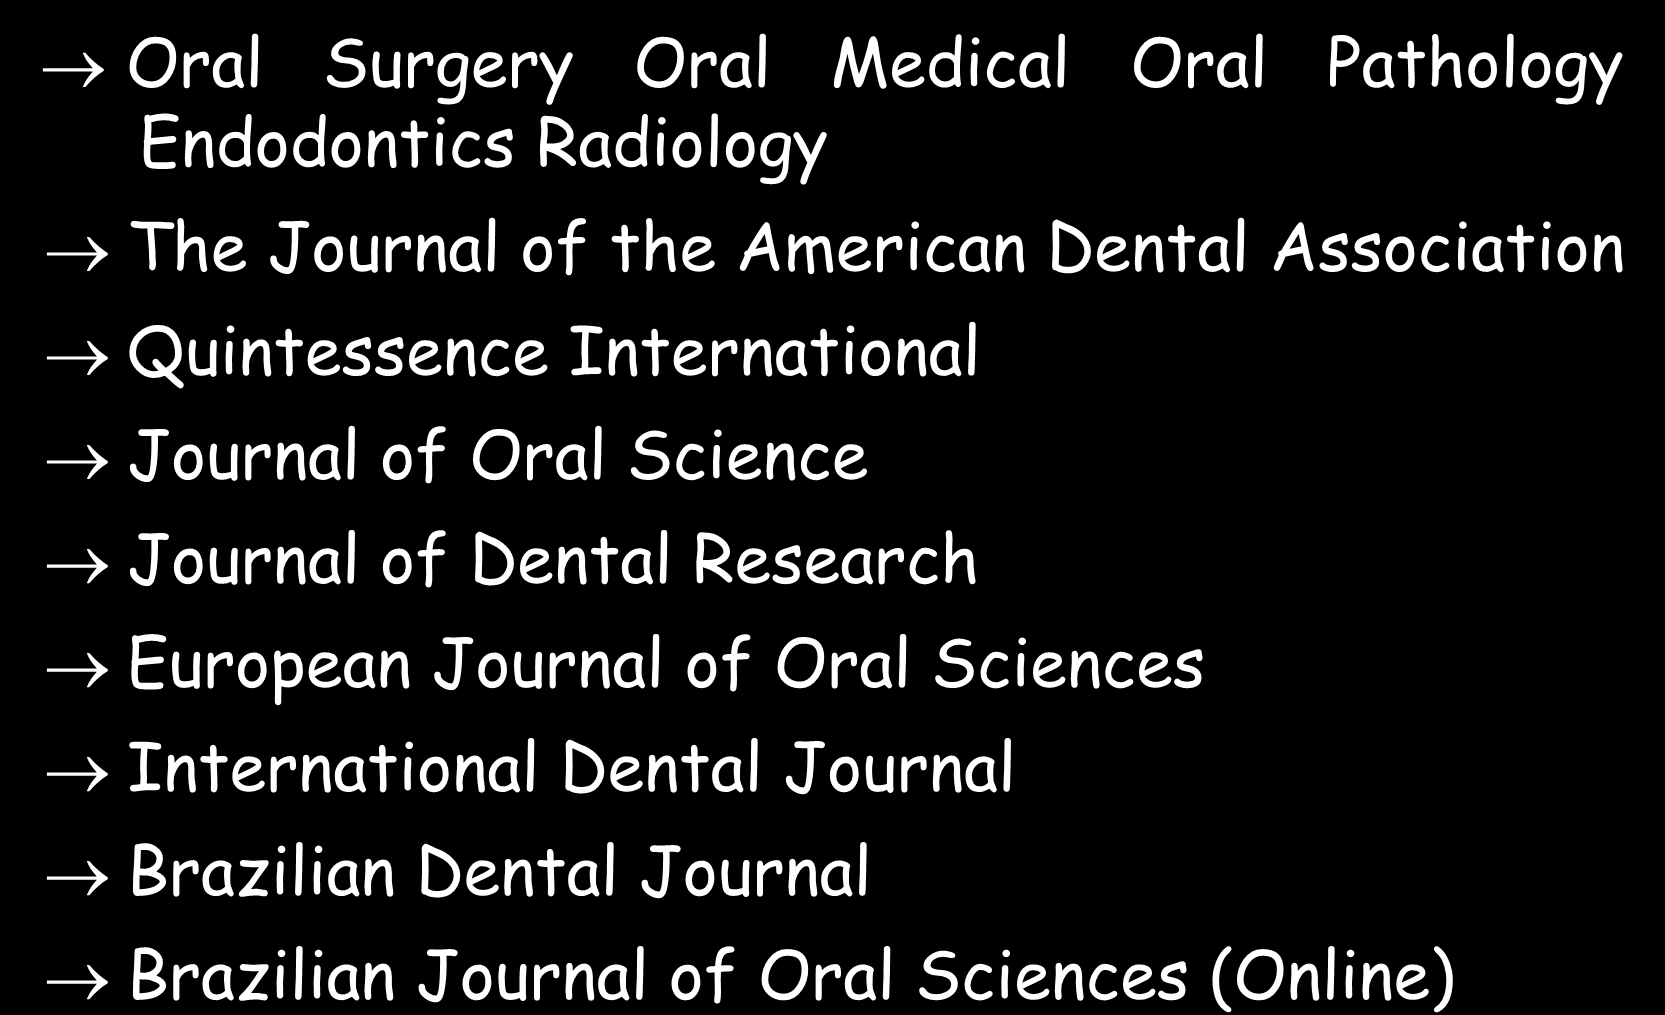 PERIÓDICOS - SUGESTÕES INTERDISCIPLINARES ORGANIZAÇÃO DOS ESTUDOS Oral Surgery Oral Medical Oral Pathology Endodontics Radiology The Journal of the American Dental Association Quintessence